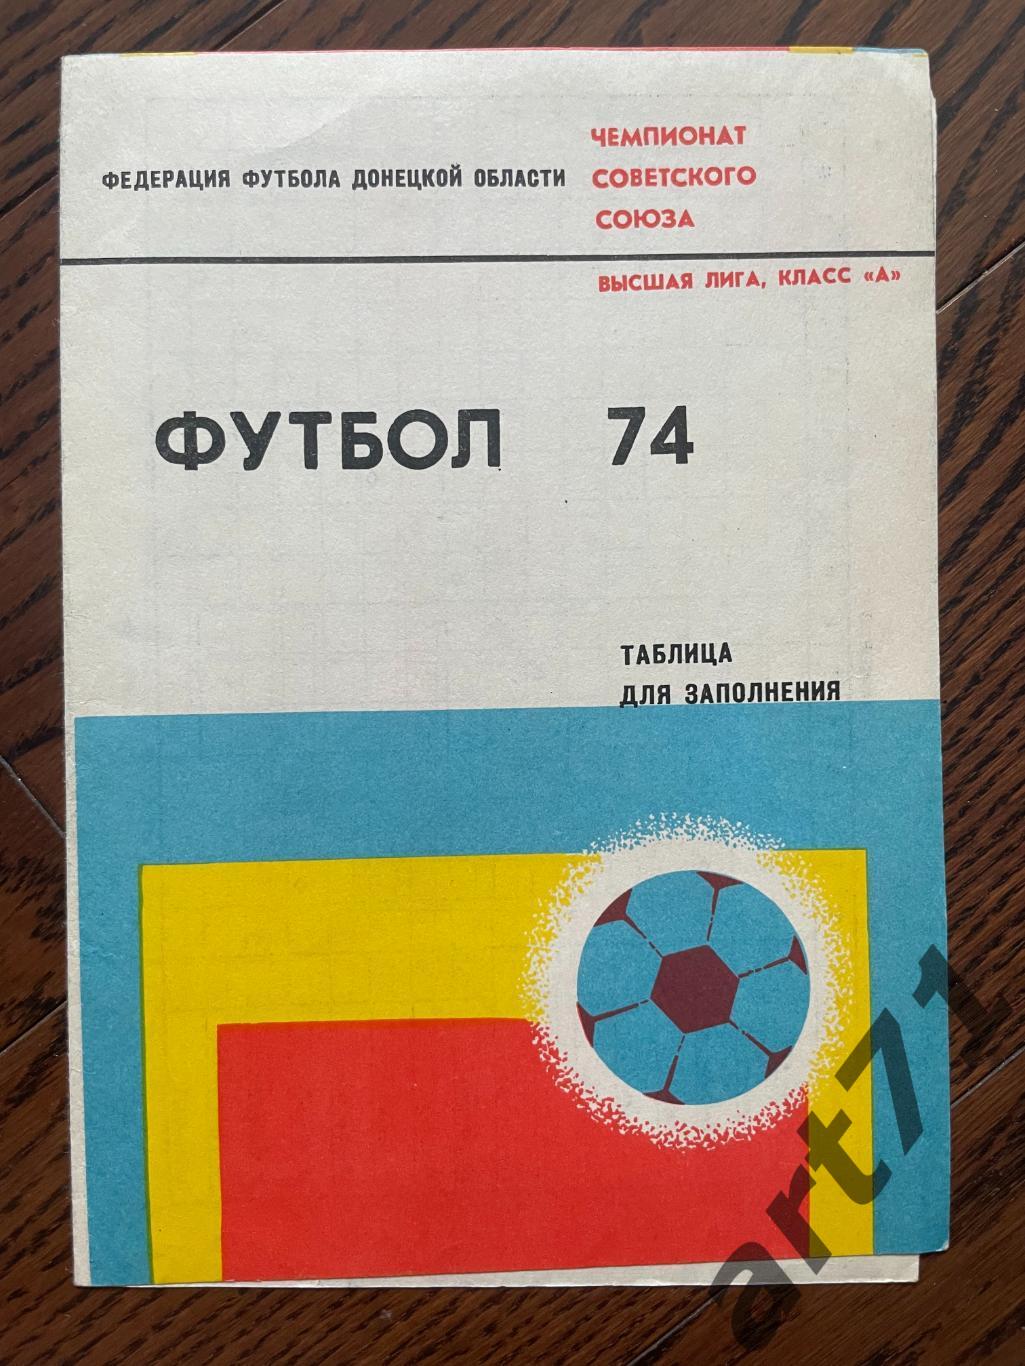 Шахтер Донецк 1974, таблица для заполнения, календарь игр